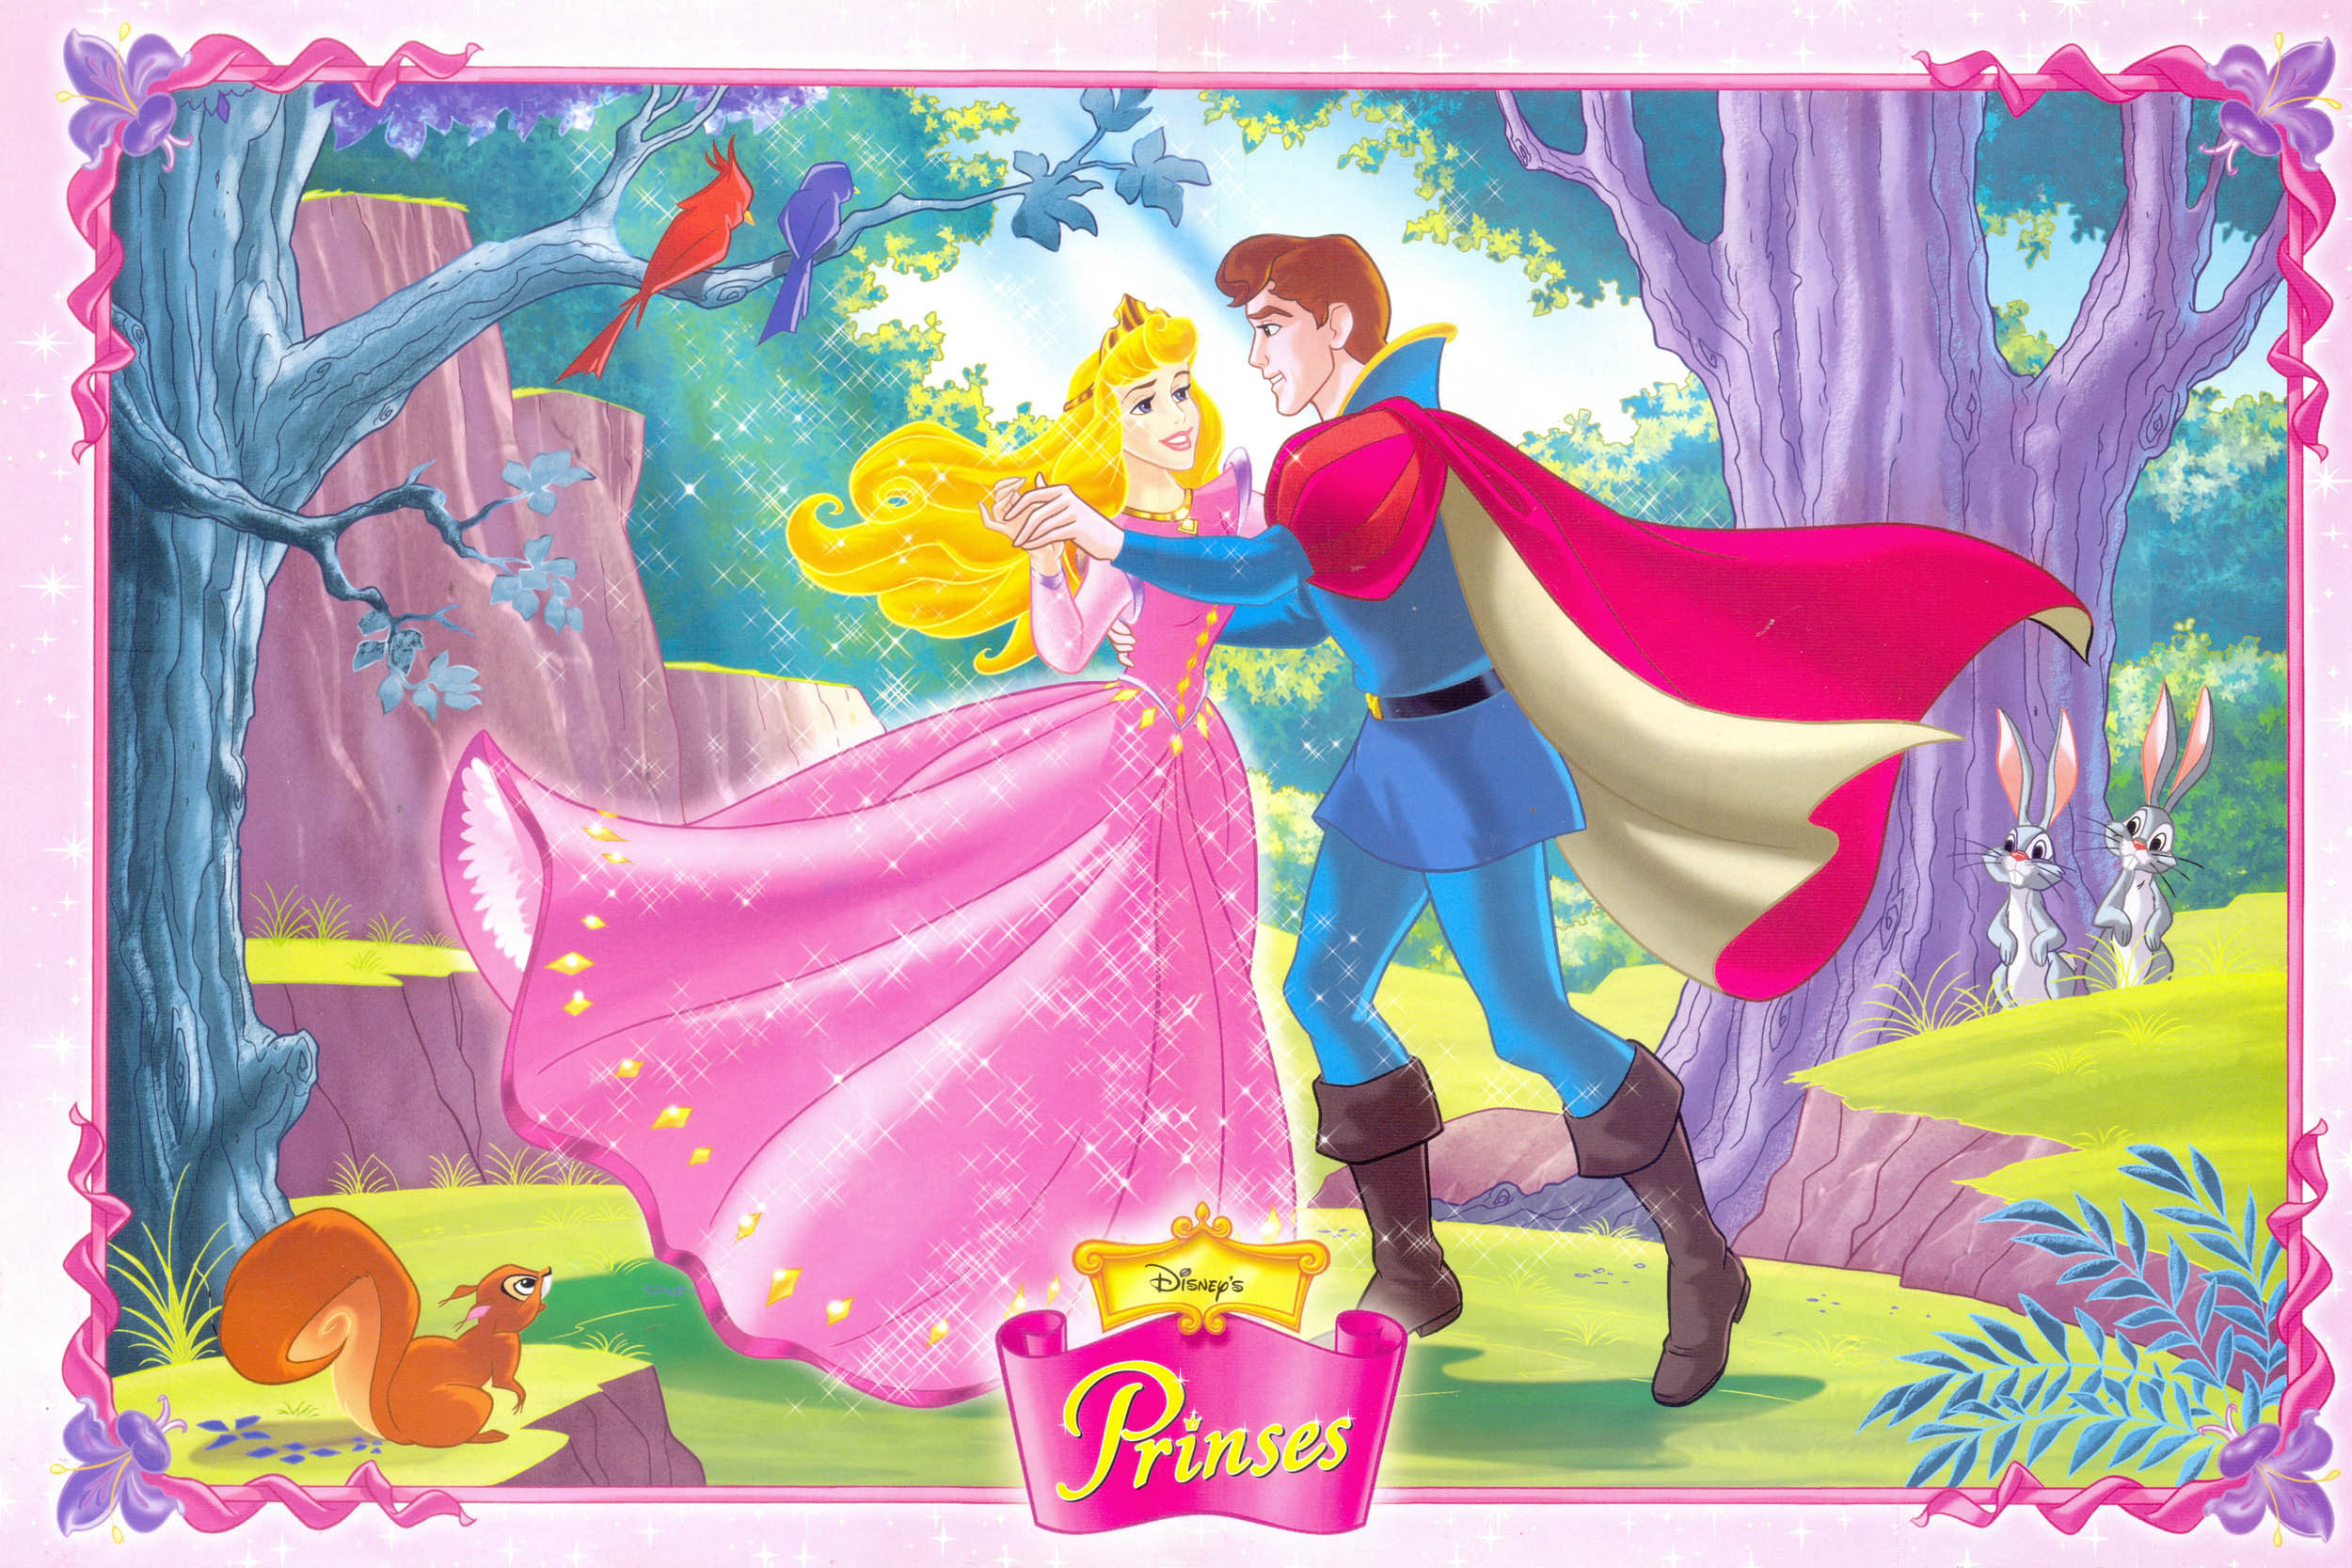 And Princess Aurora Pangeran Philip Dan Putri Disney